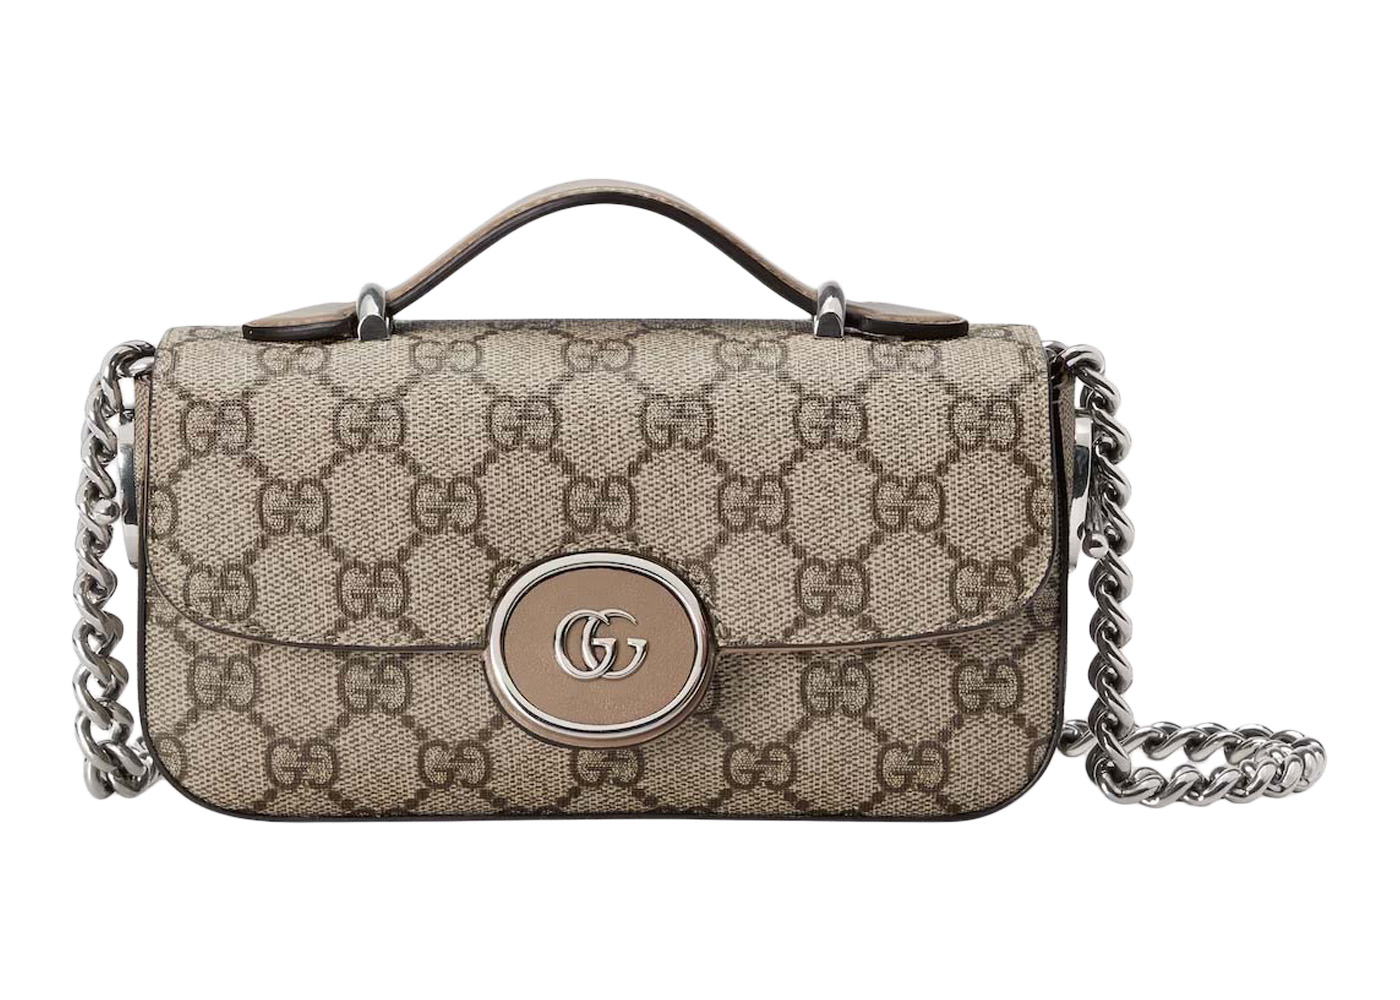 Gucci Petite GG Mini Bag Beige/Ebony in Supreme Canvas - US